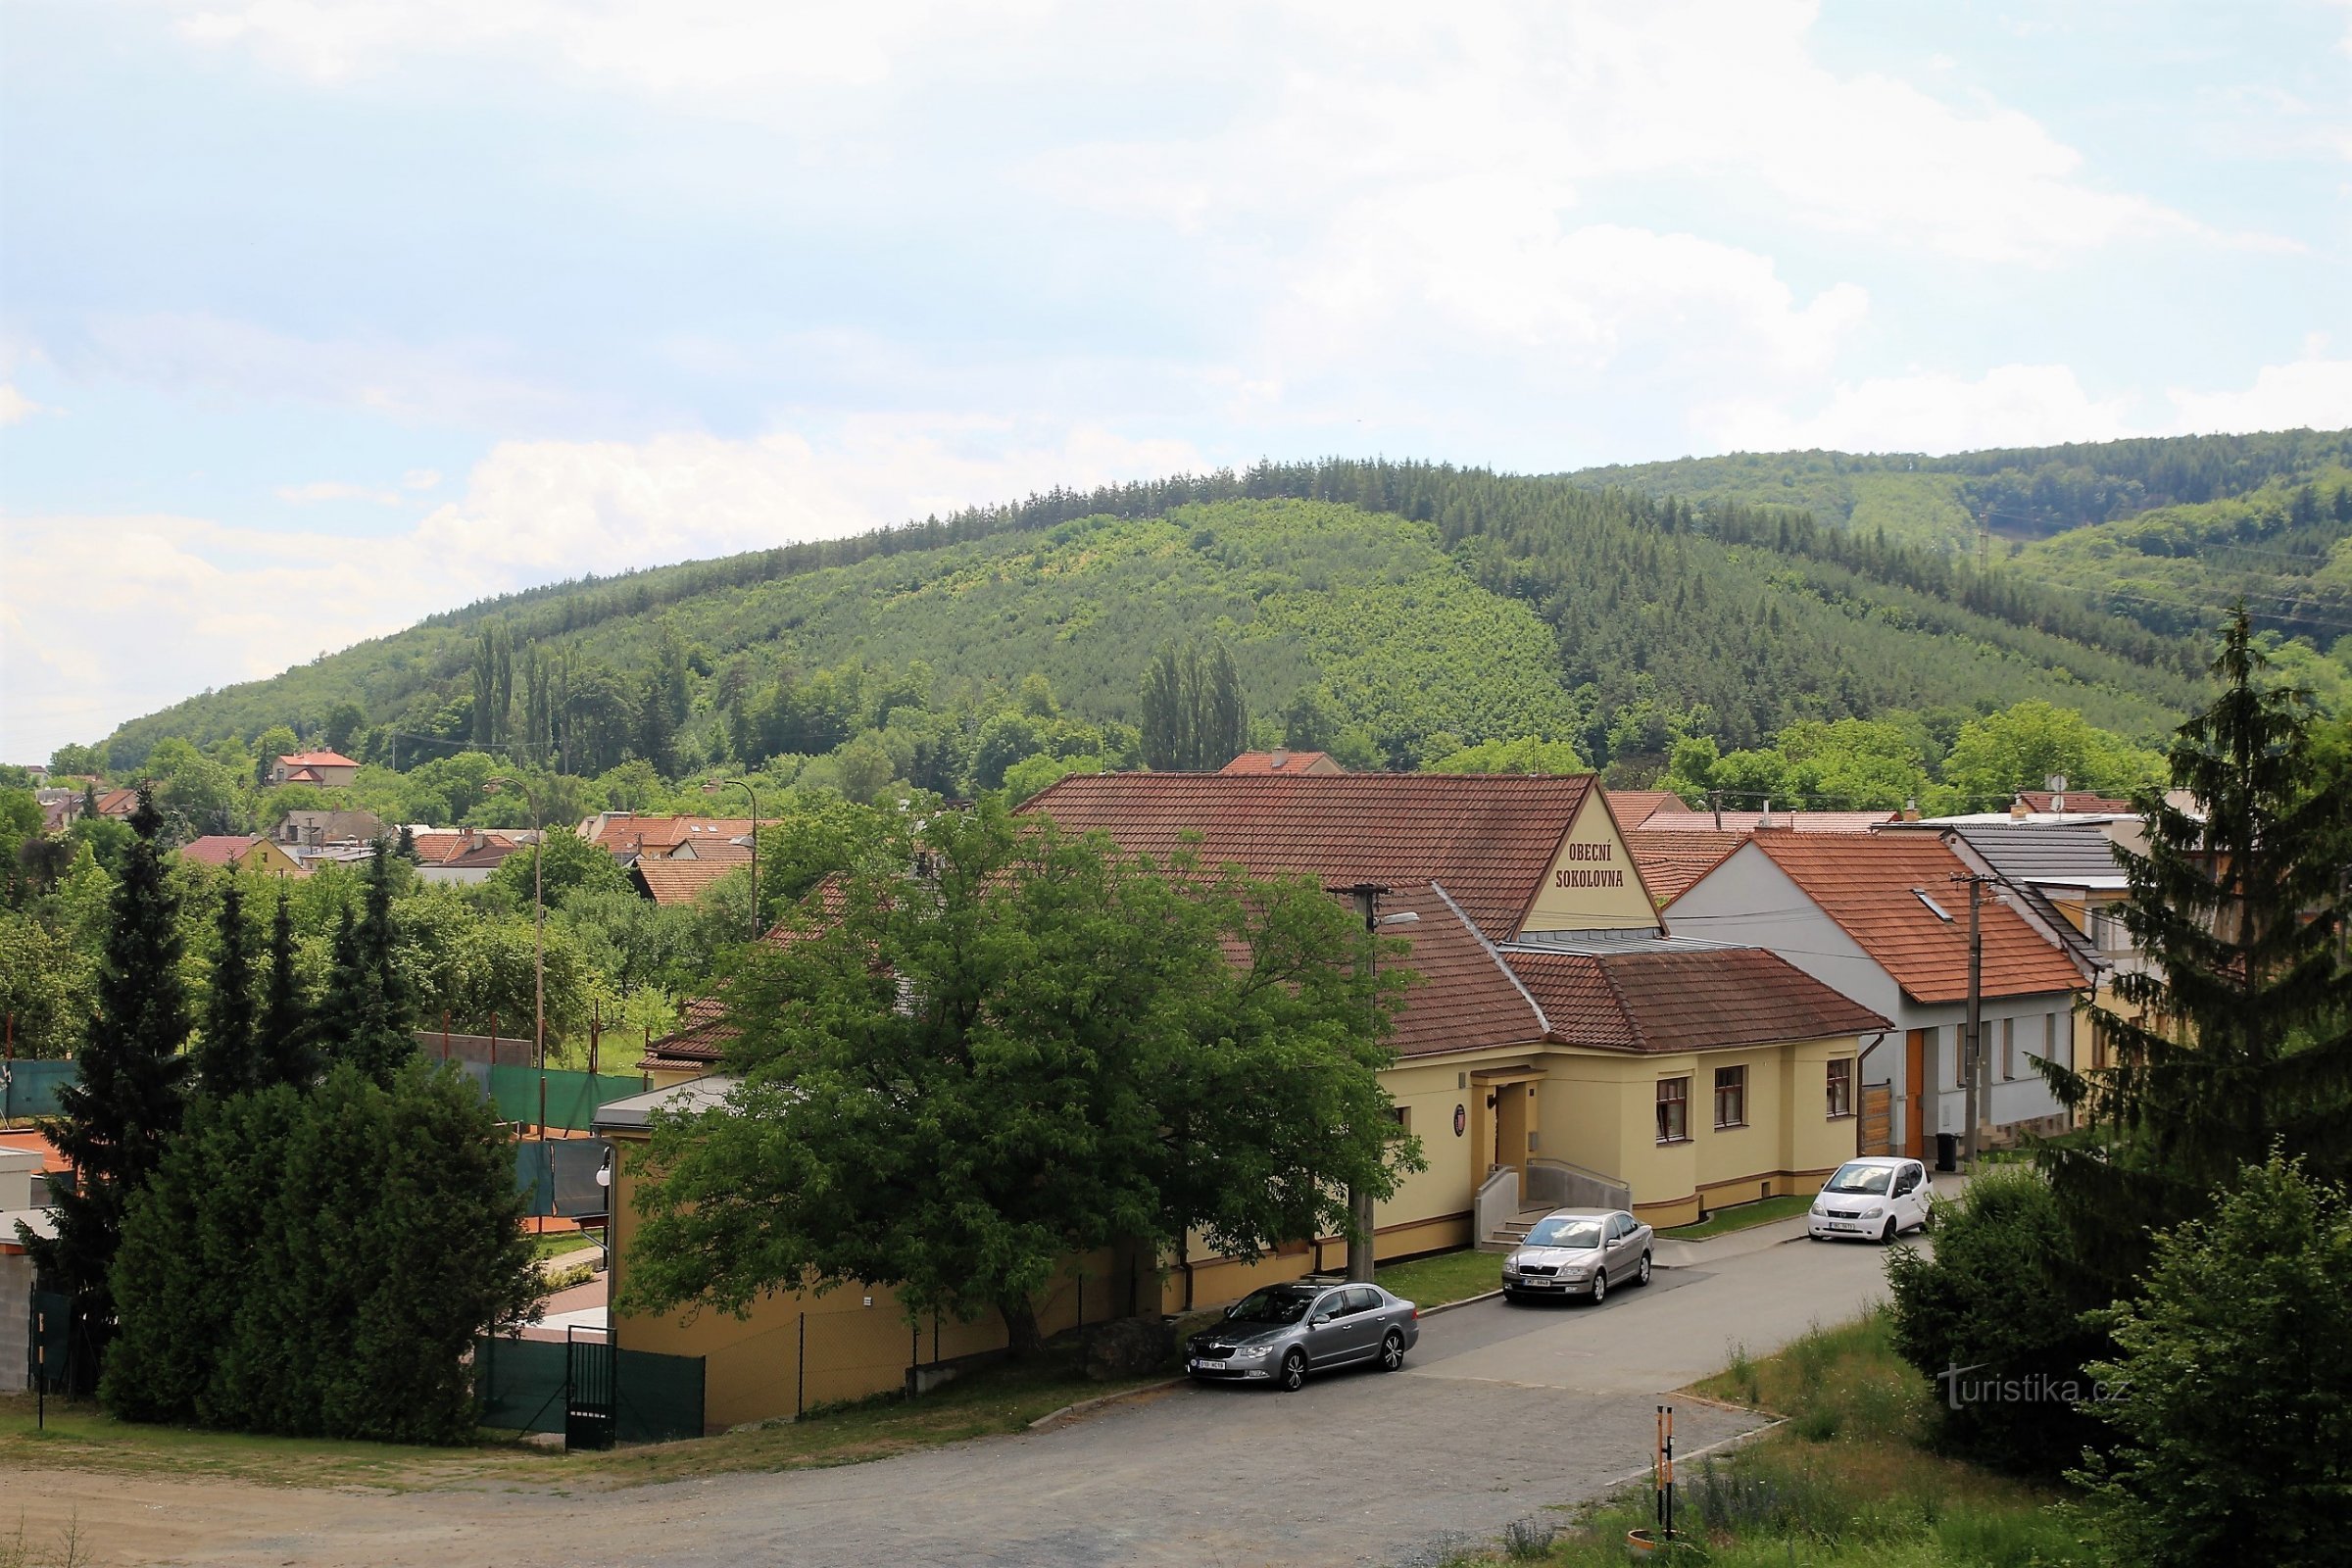 Widok na wieś i charakterystyczny szczyt Ostrá hora